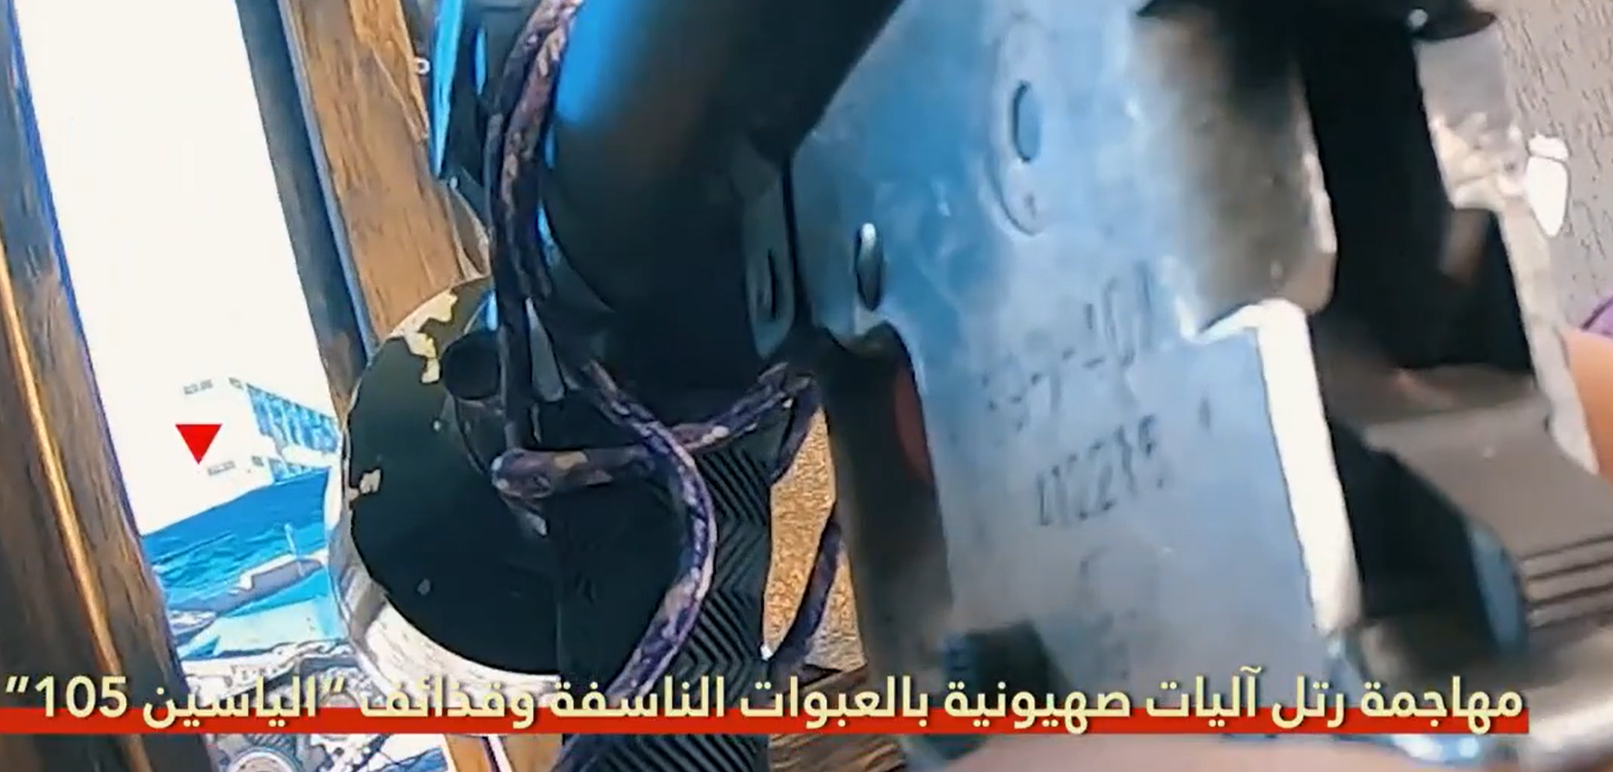 "كمين القسام الناري" يحول دبابات الاحتلال وآلياته "لخردة" في لمح البصر